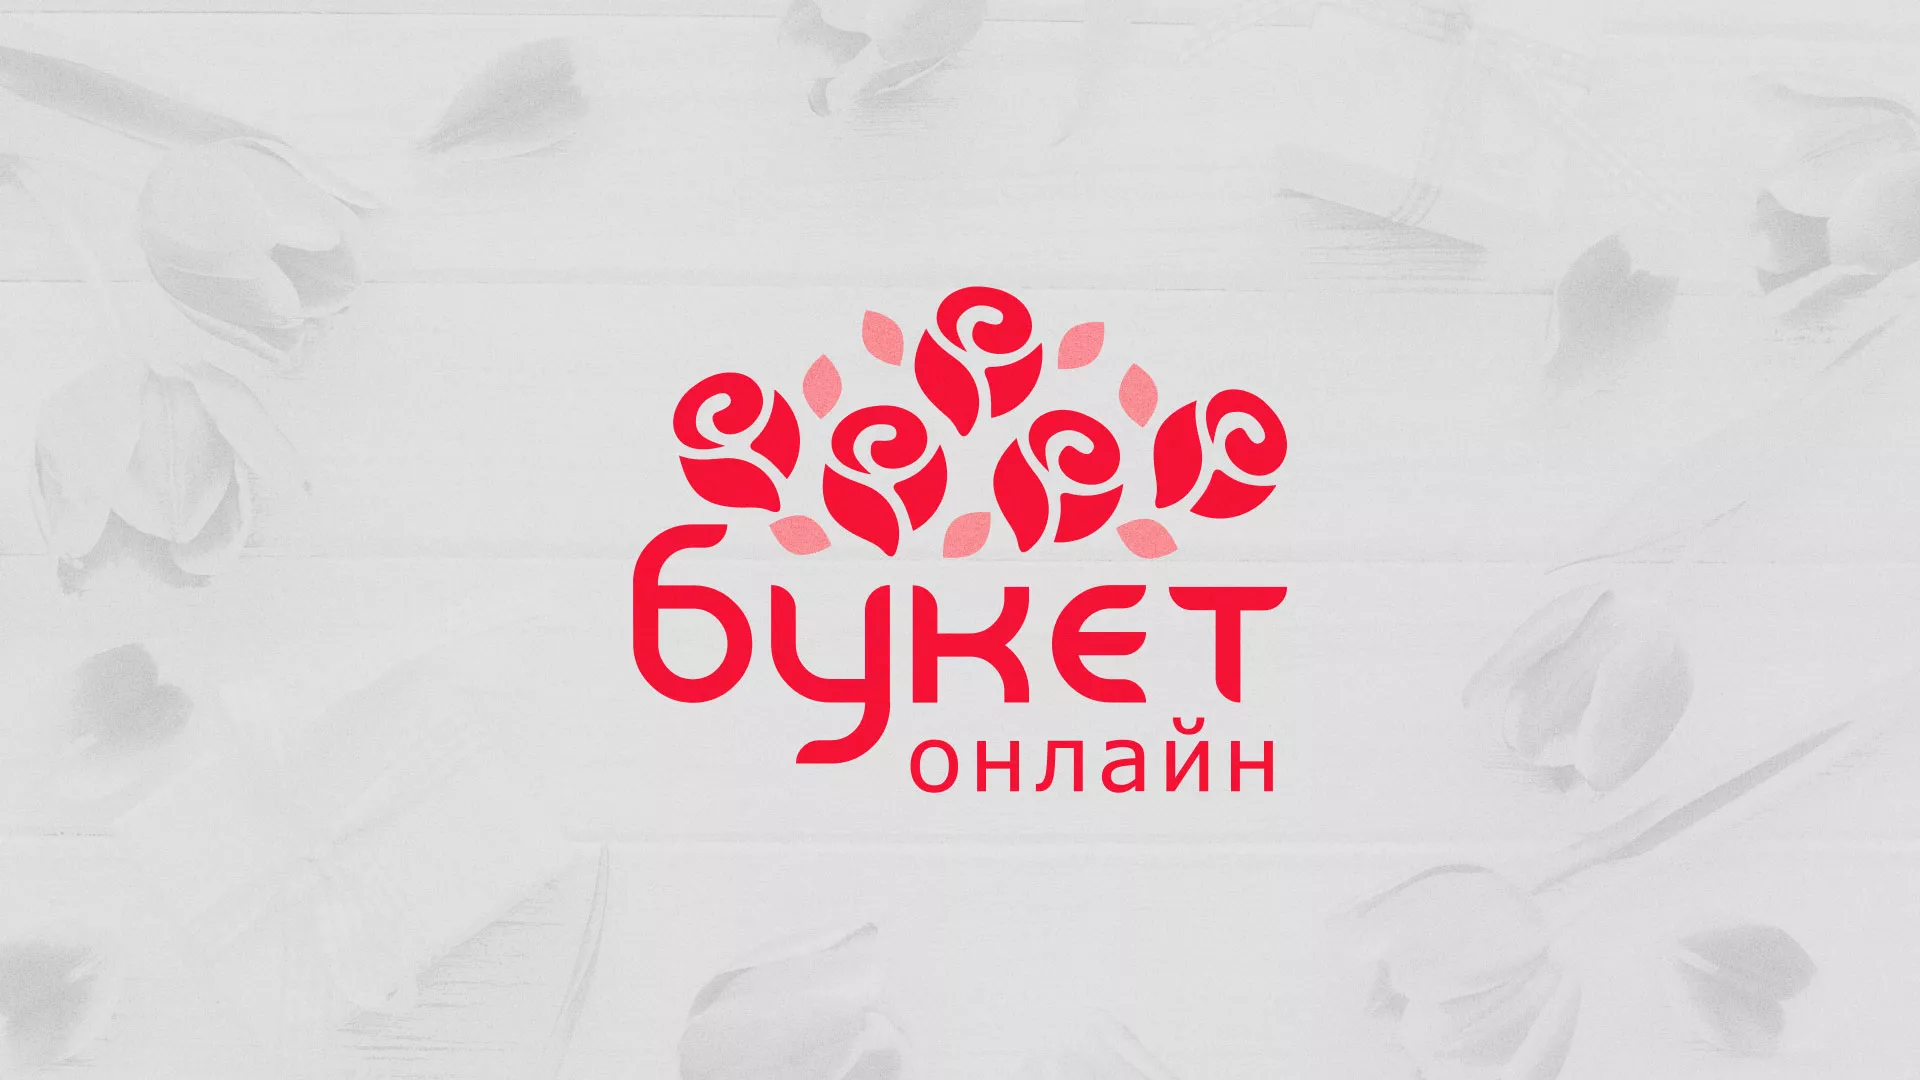 Создание интернет-магазина «Букет-онлайн» по цветам в Светогорске